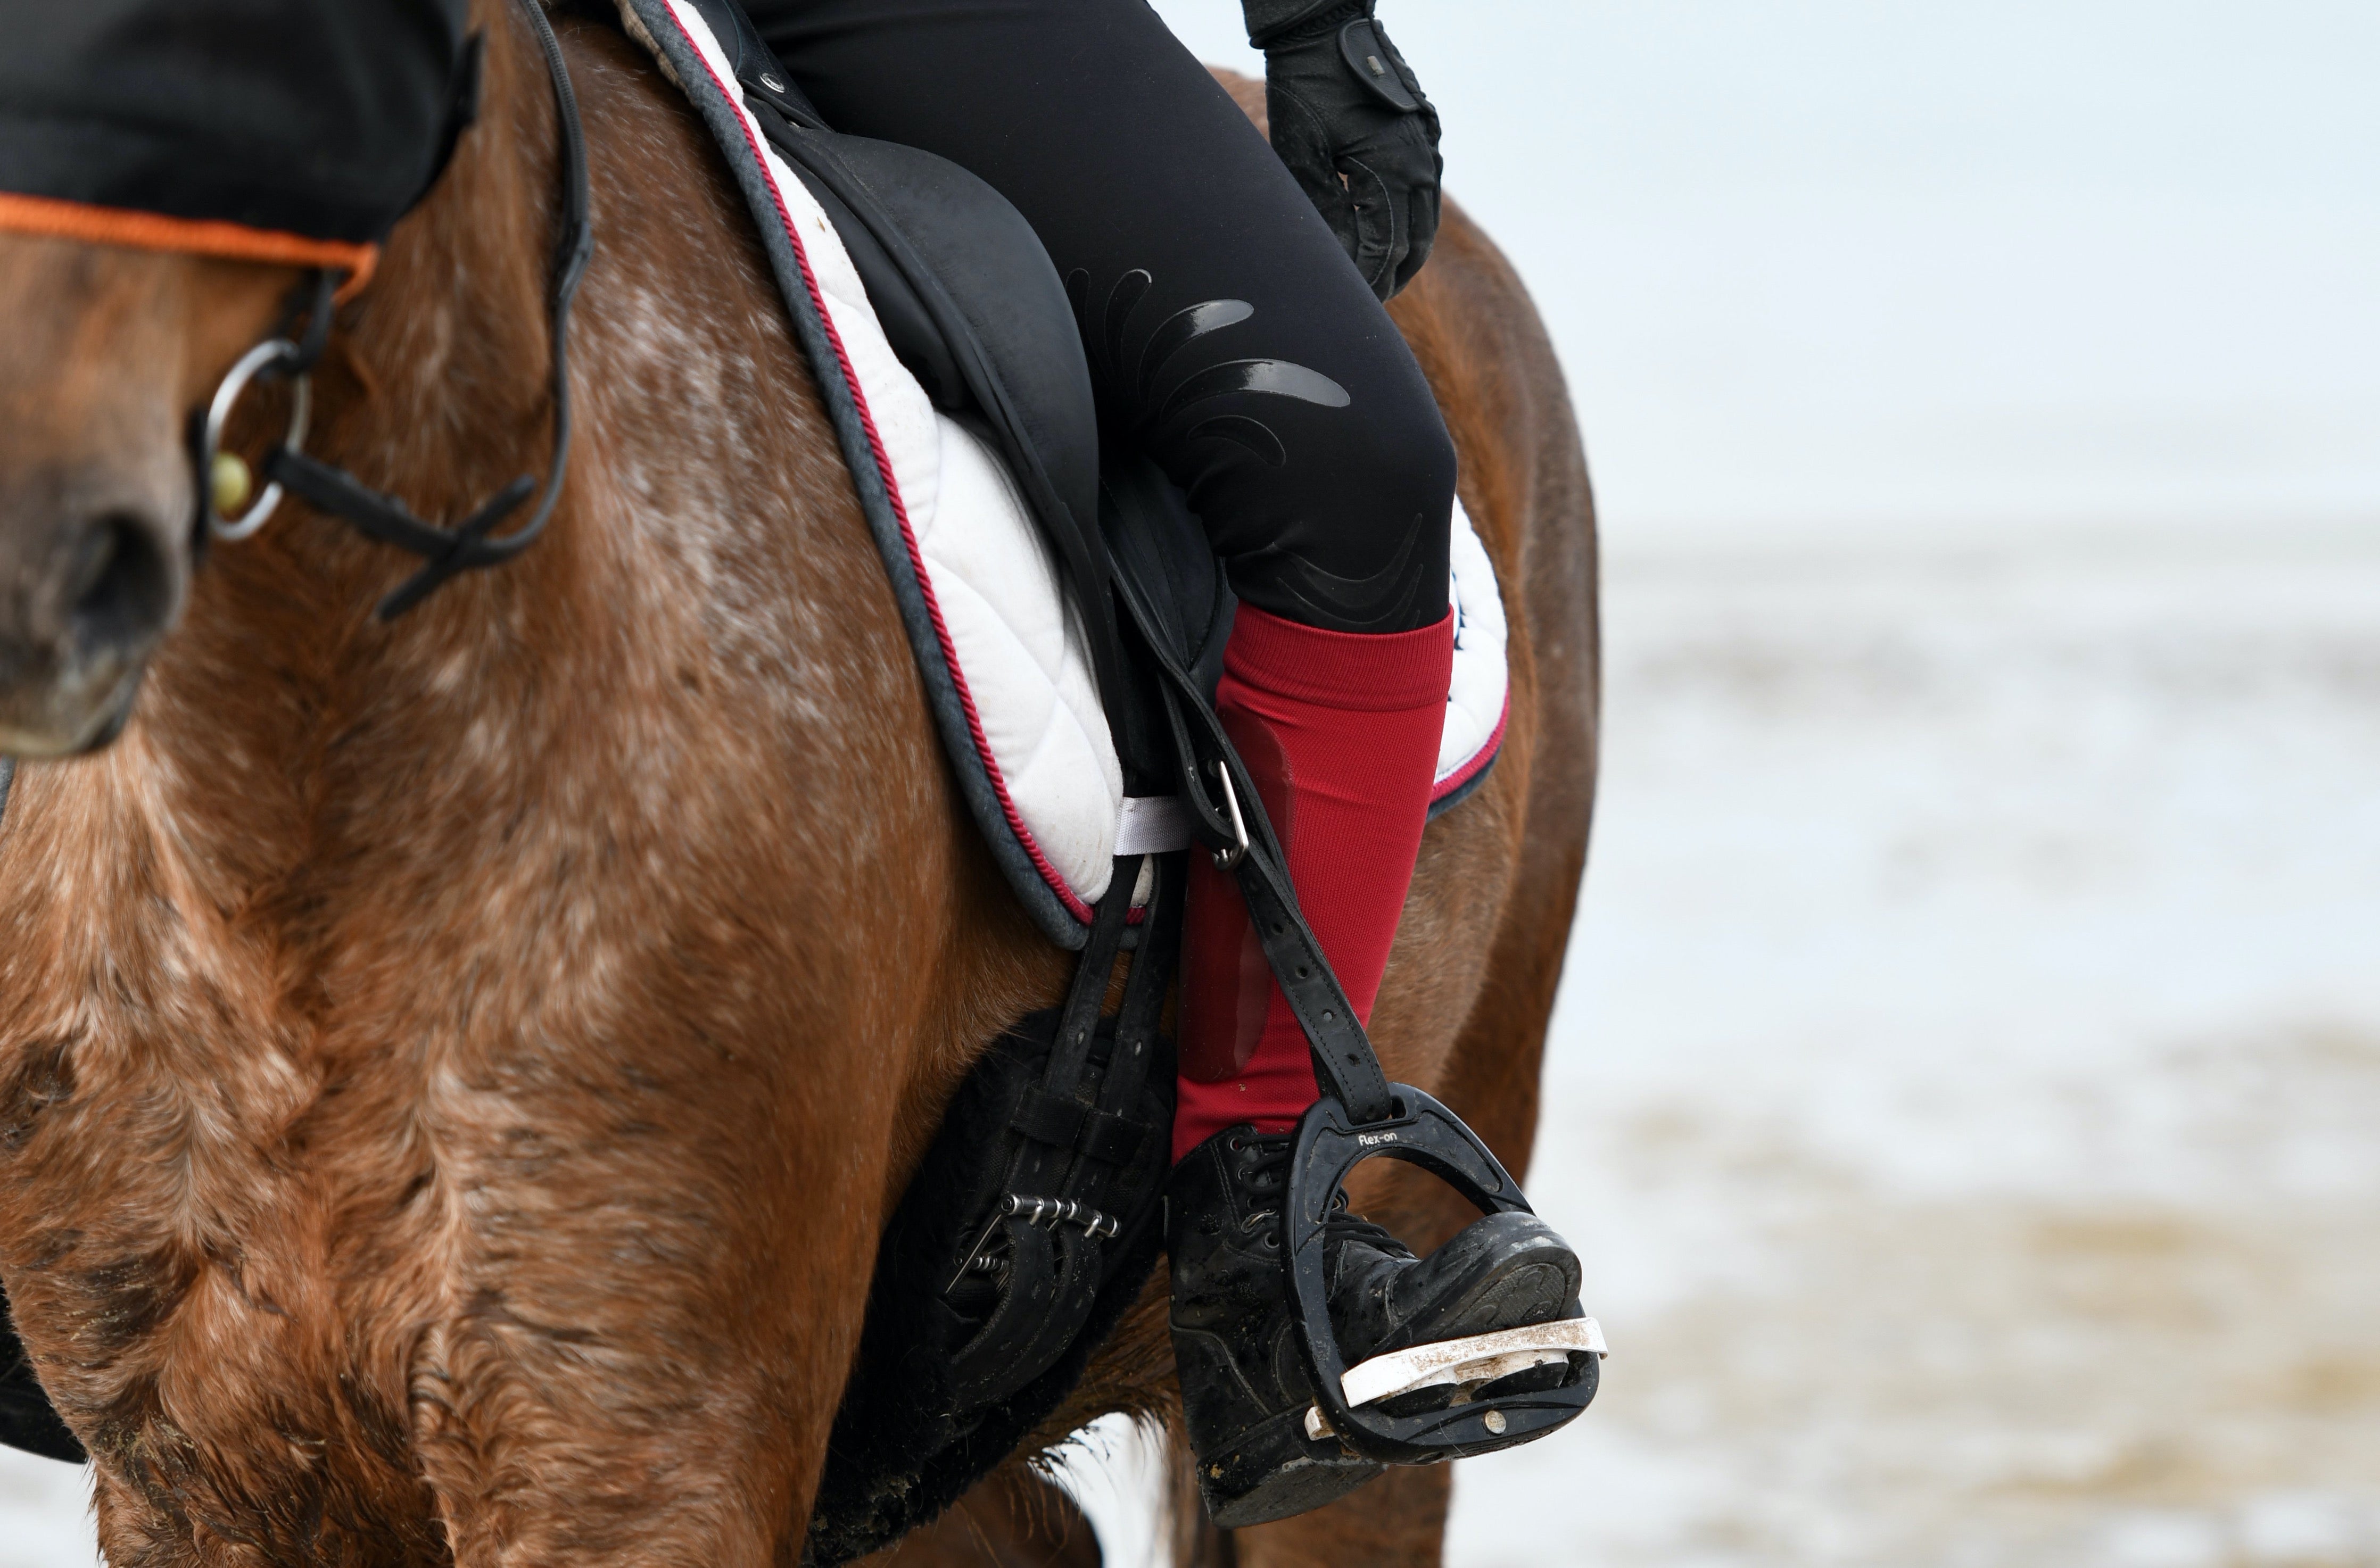 Les chaussettes d'équitation Fixity West Island sont idéales pour monter à cheval sur la plage.  